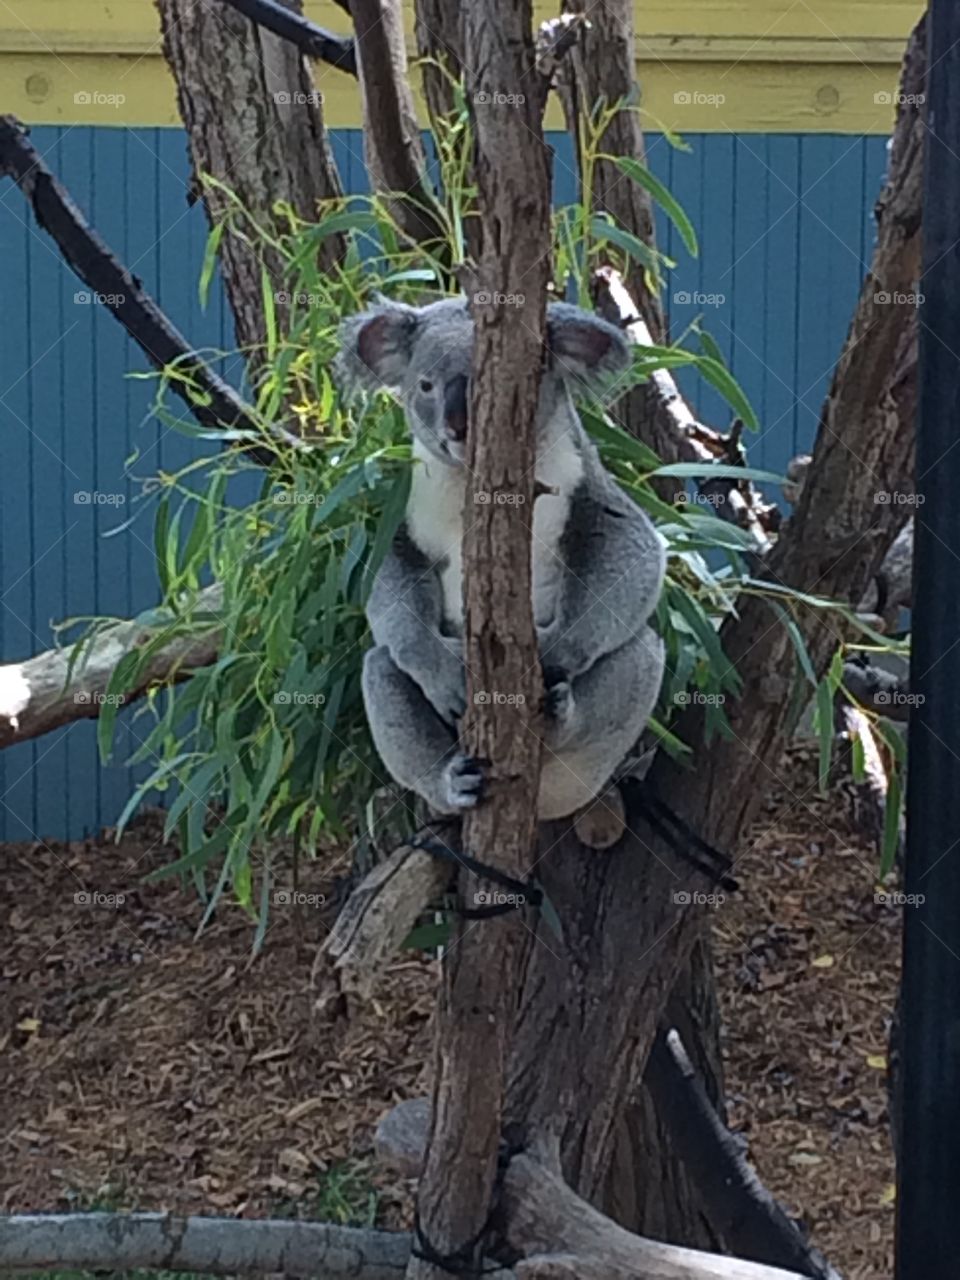 Cleveland Zoo Koala
